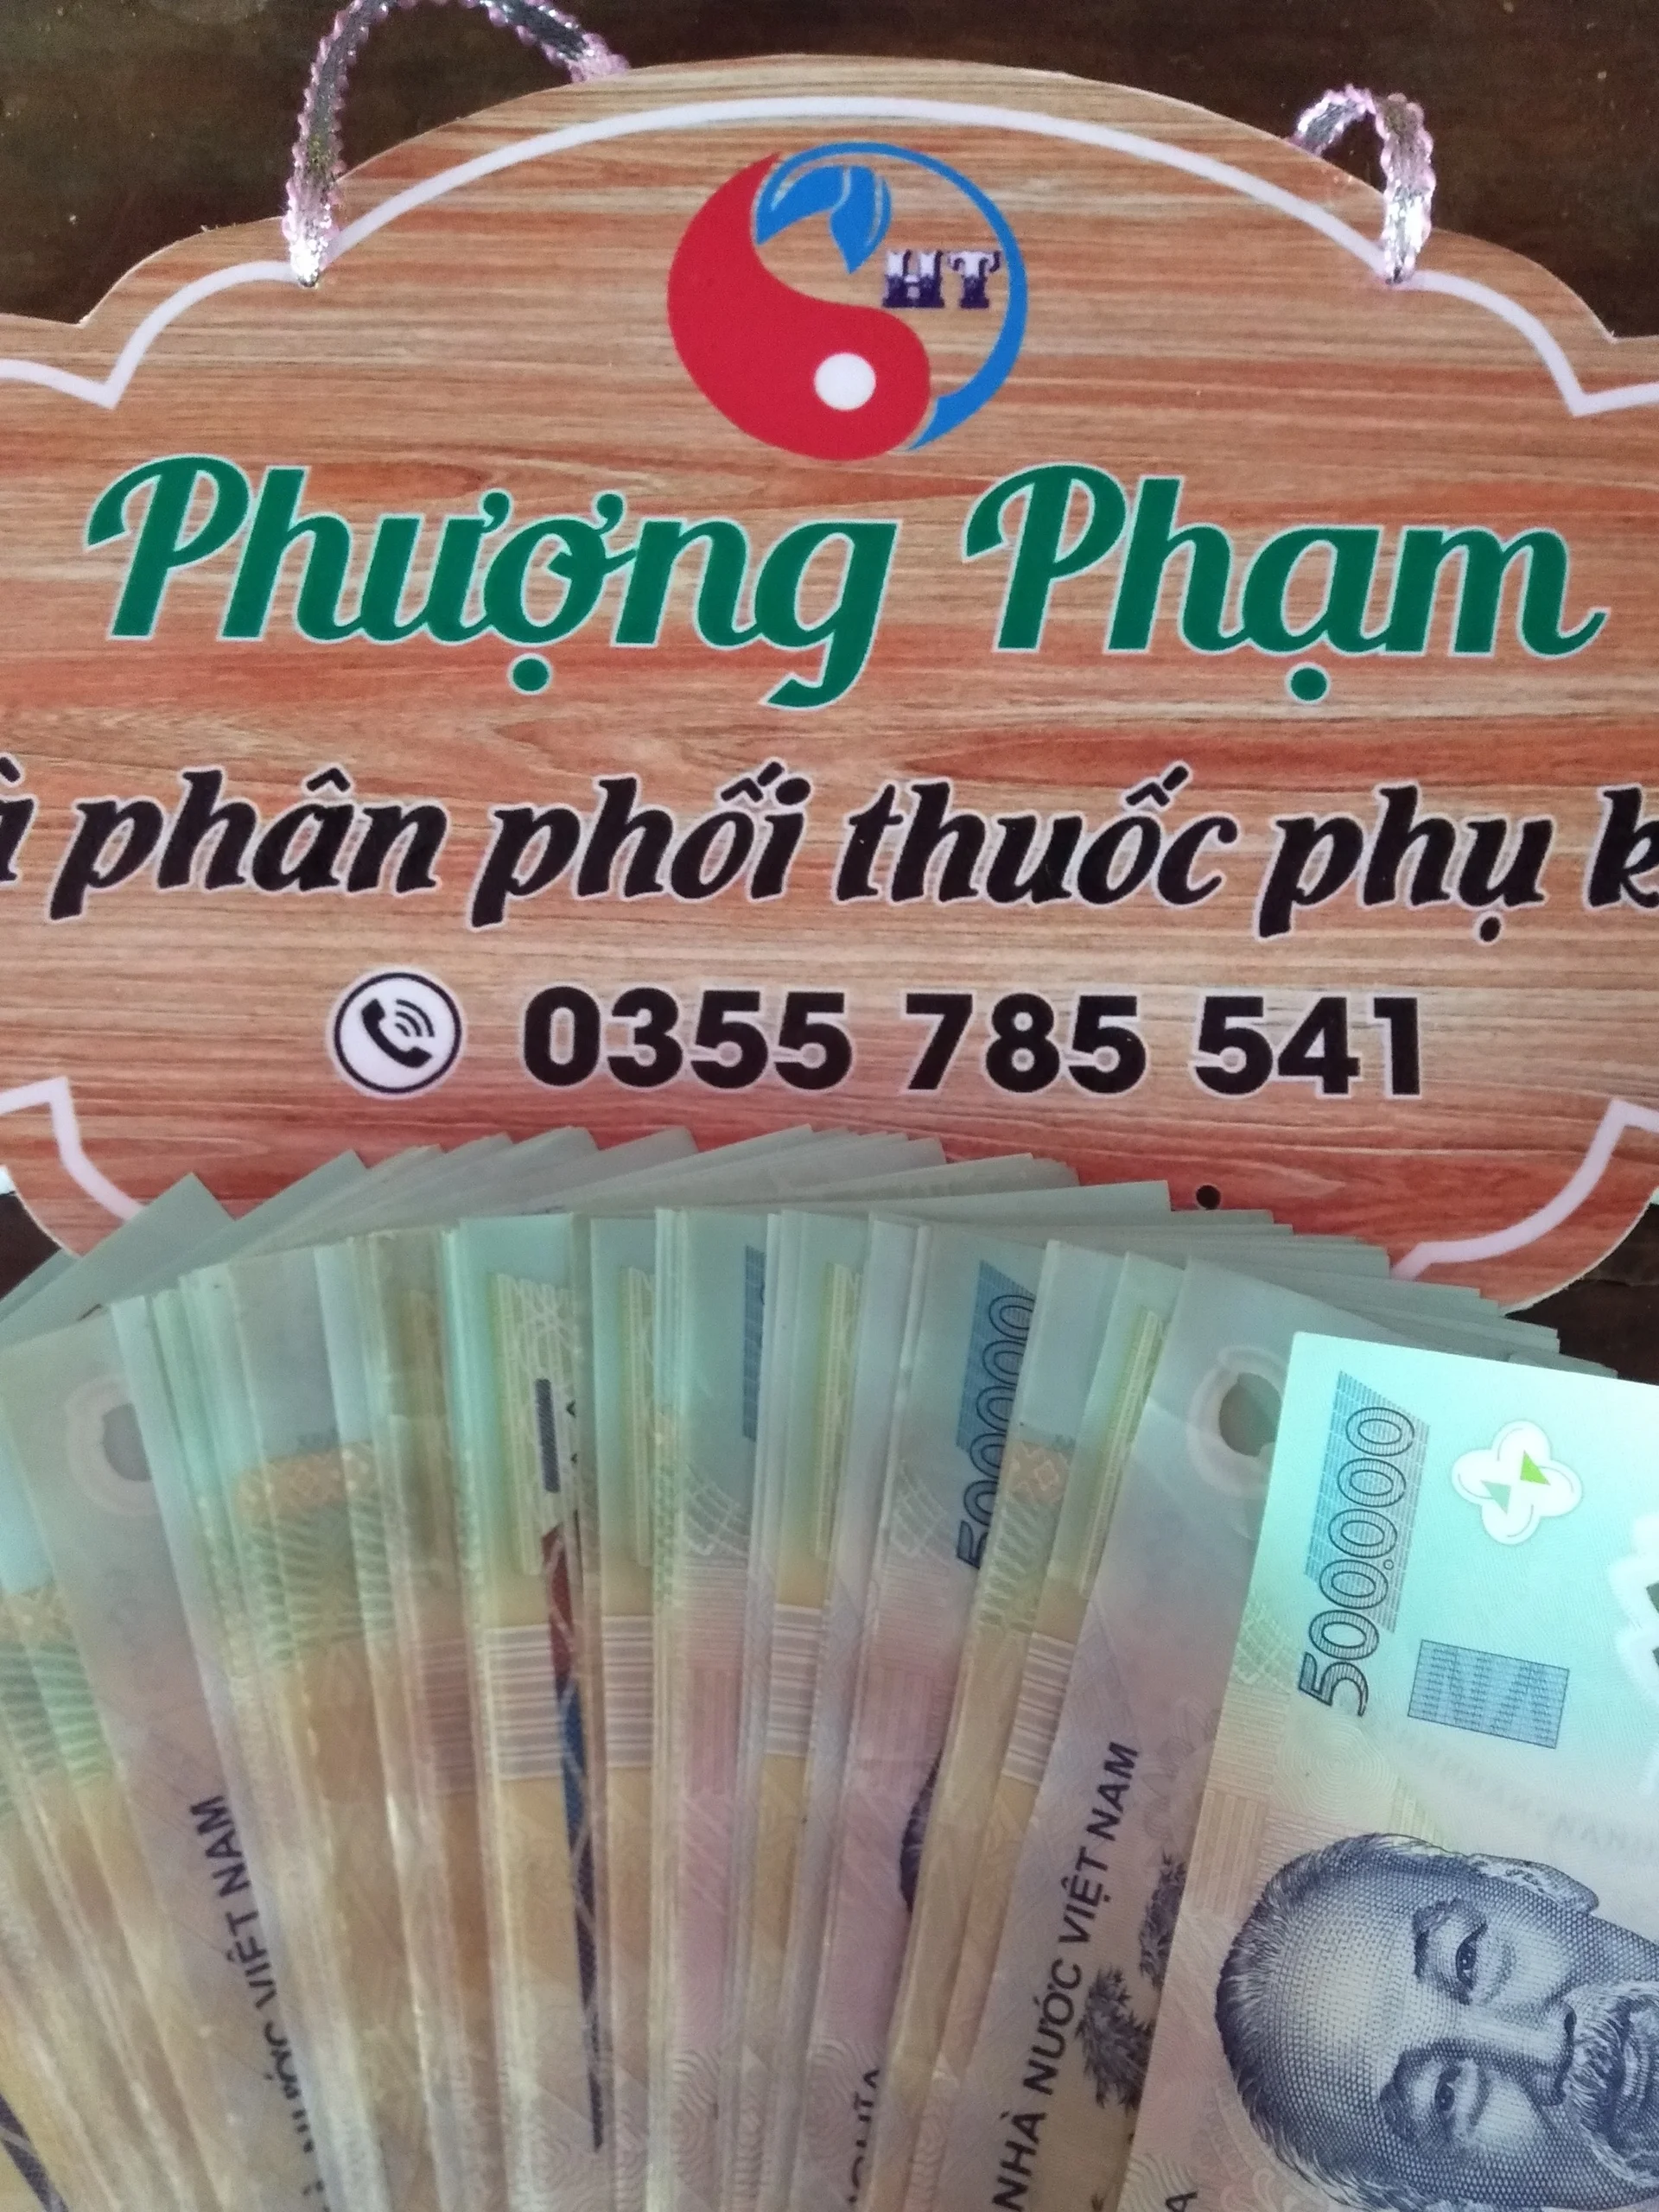 Phượng Phạm's cover photo